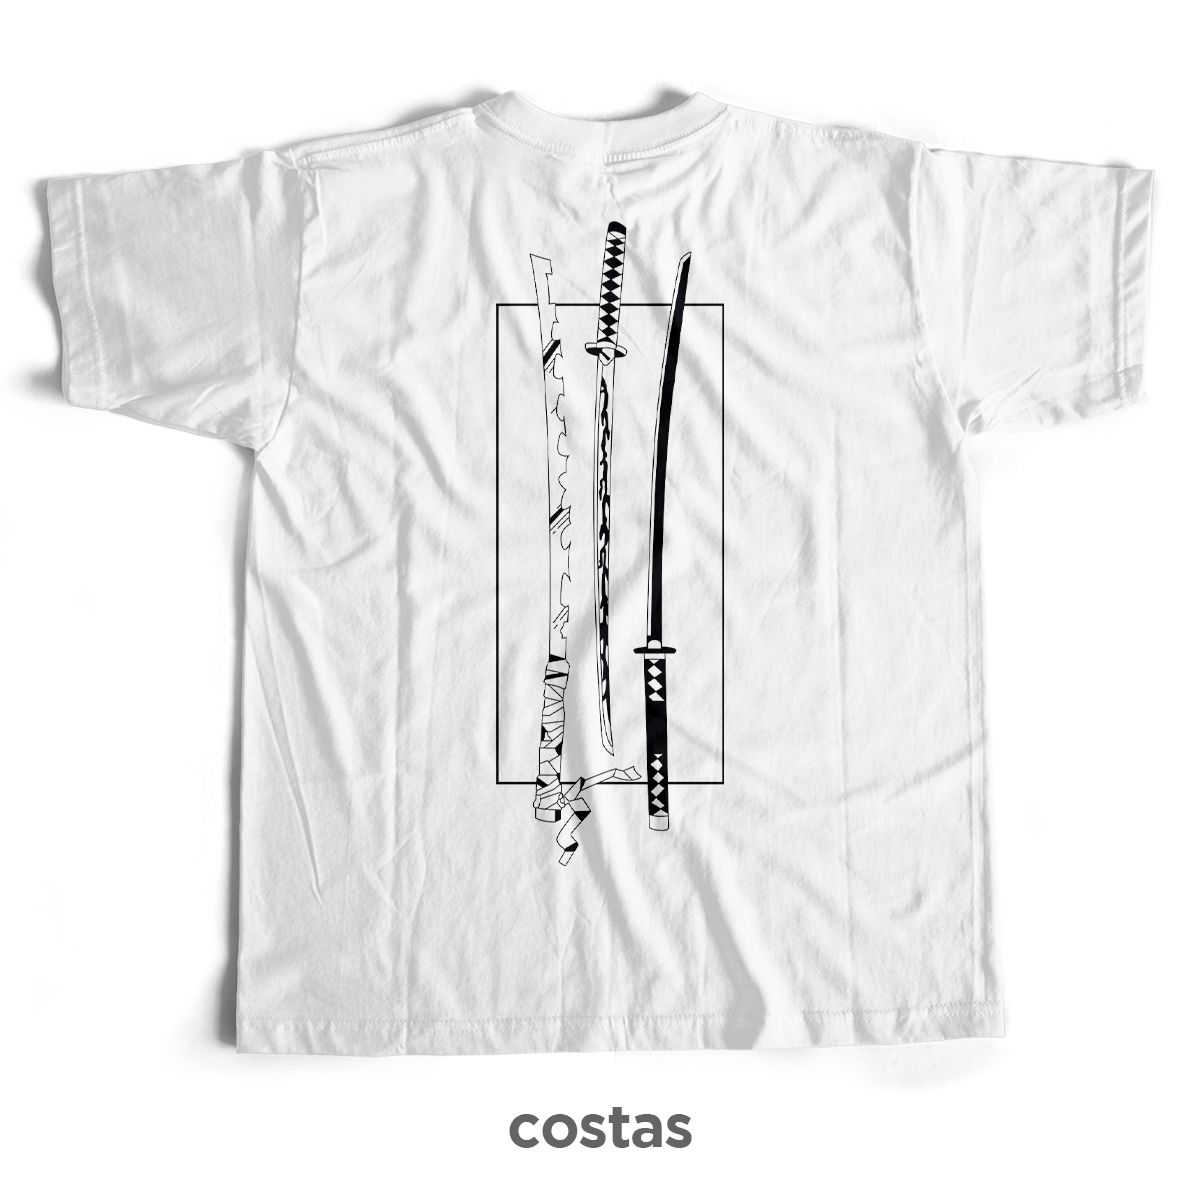 Nome do produto: Camiseta Preta - Nichirin (Costas)